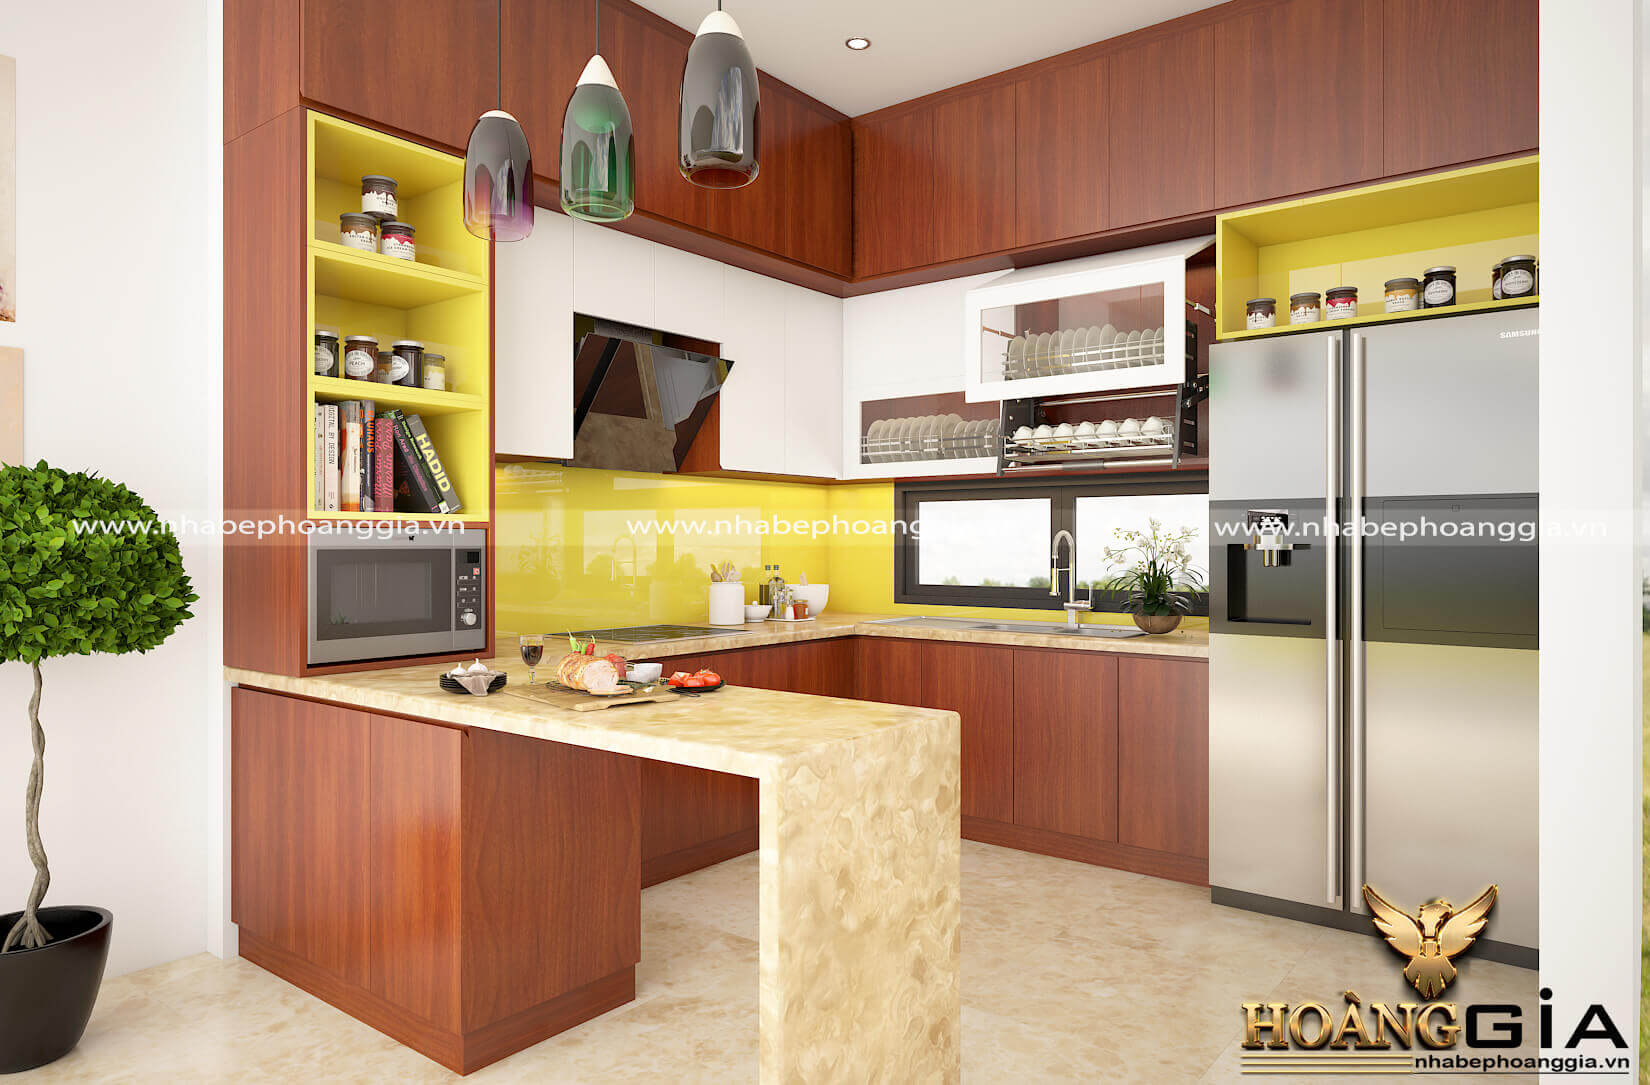 Laminate - chất liệu gỗ laminate trong thiết kế nội thất tủ bếp